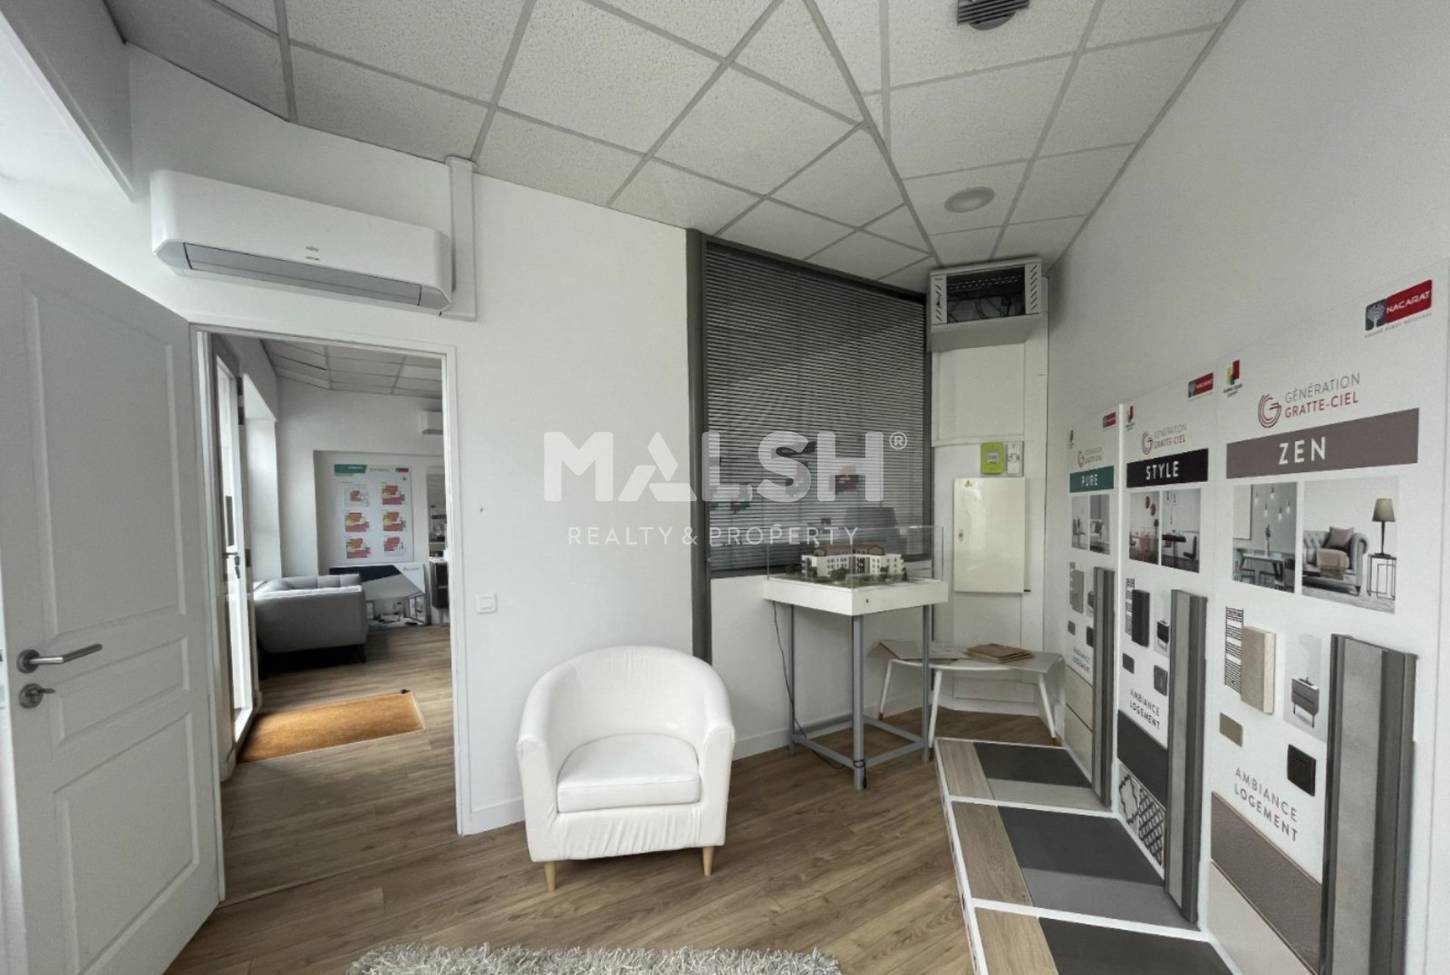 MALSH Realty & Property - Commerce - Carré de Soie / Grand Clément / Bel Air - Villeurbanne - MD_